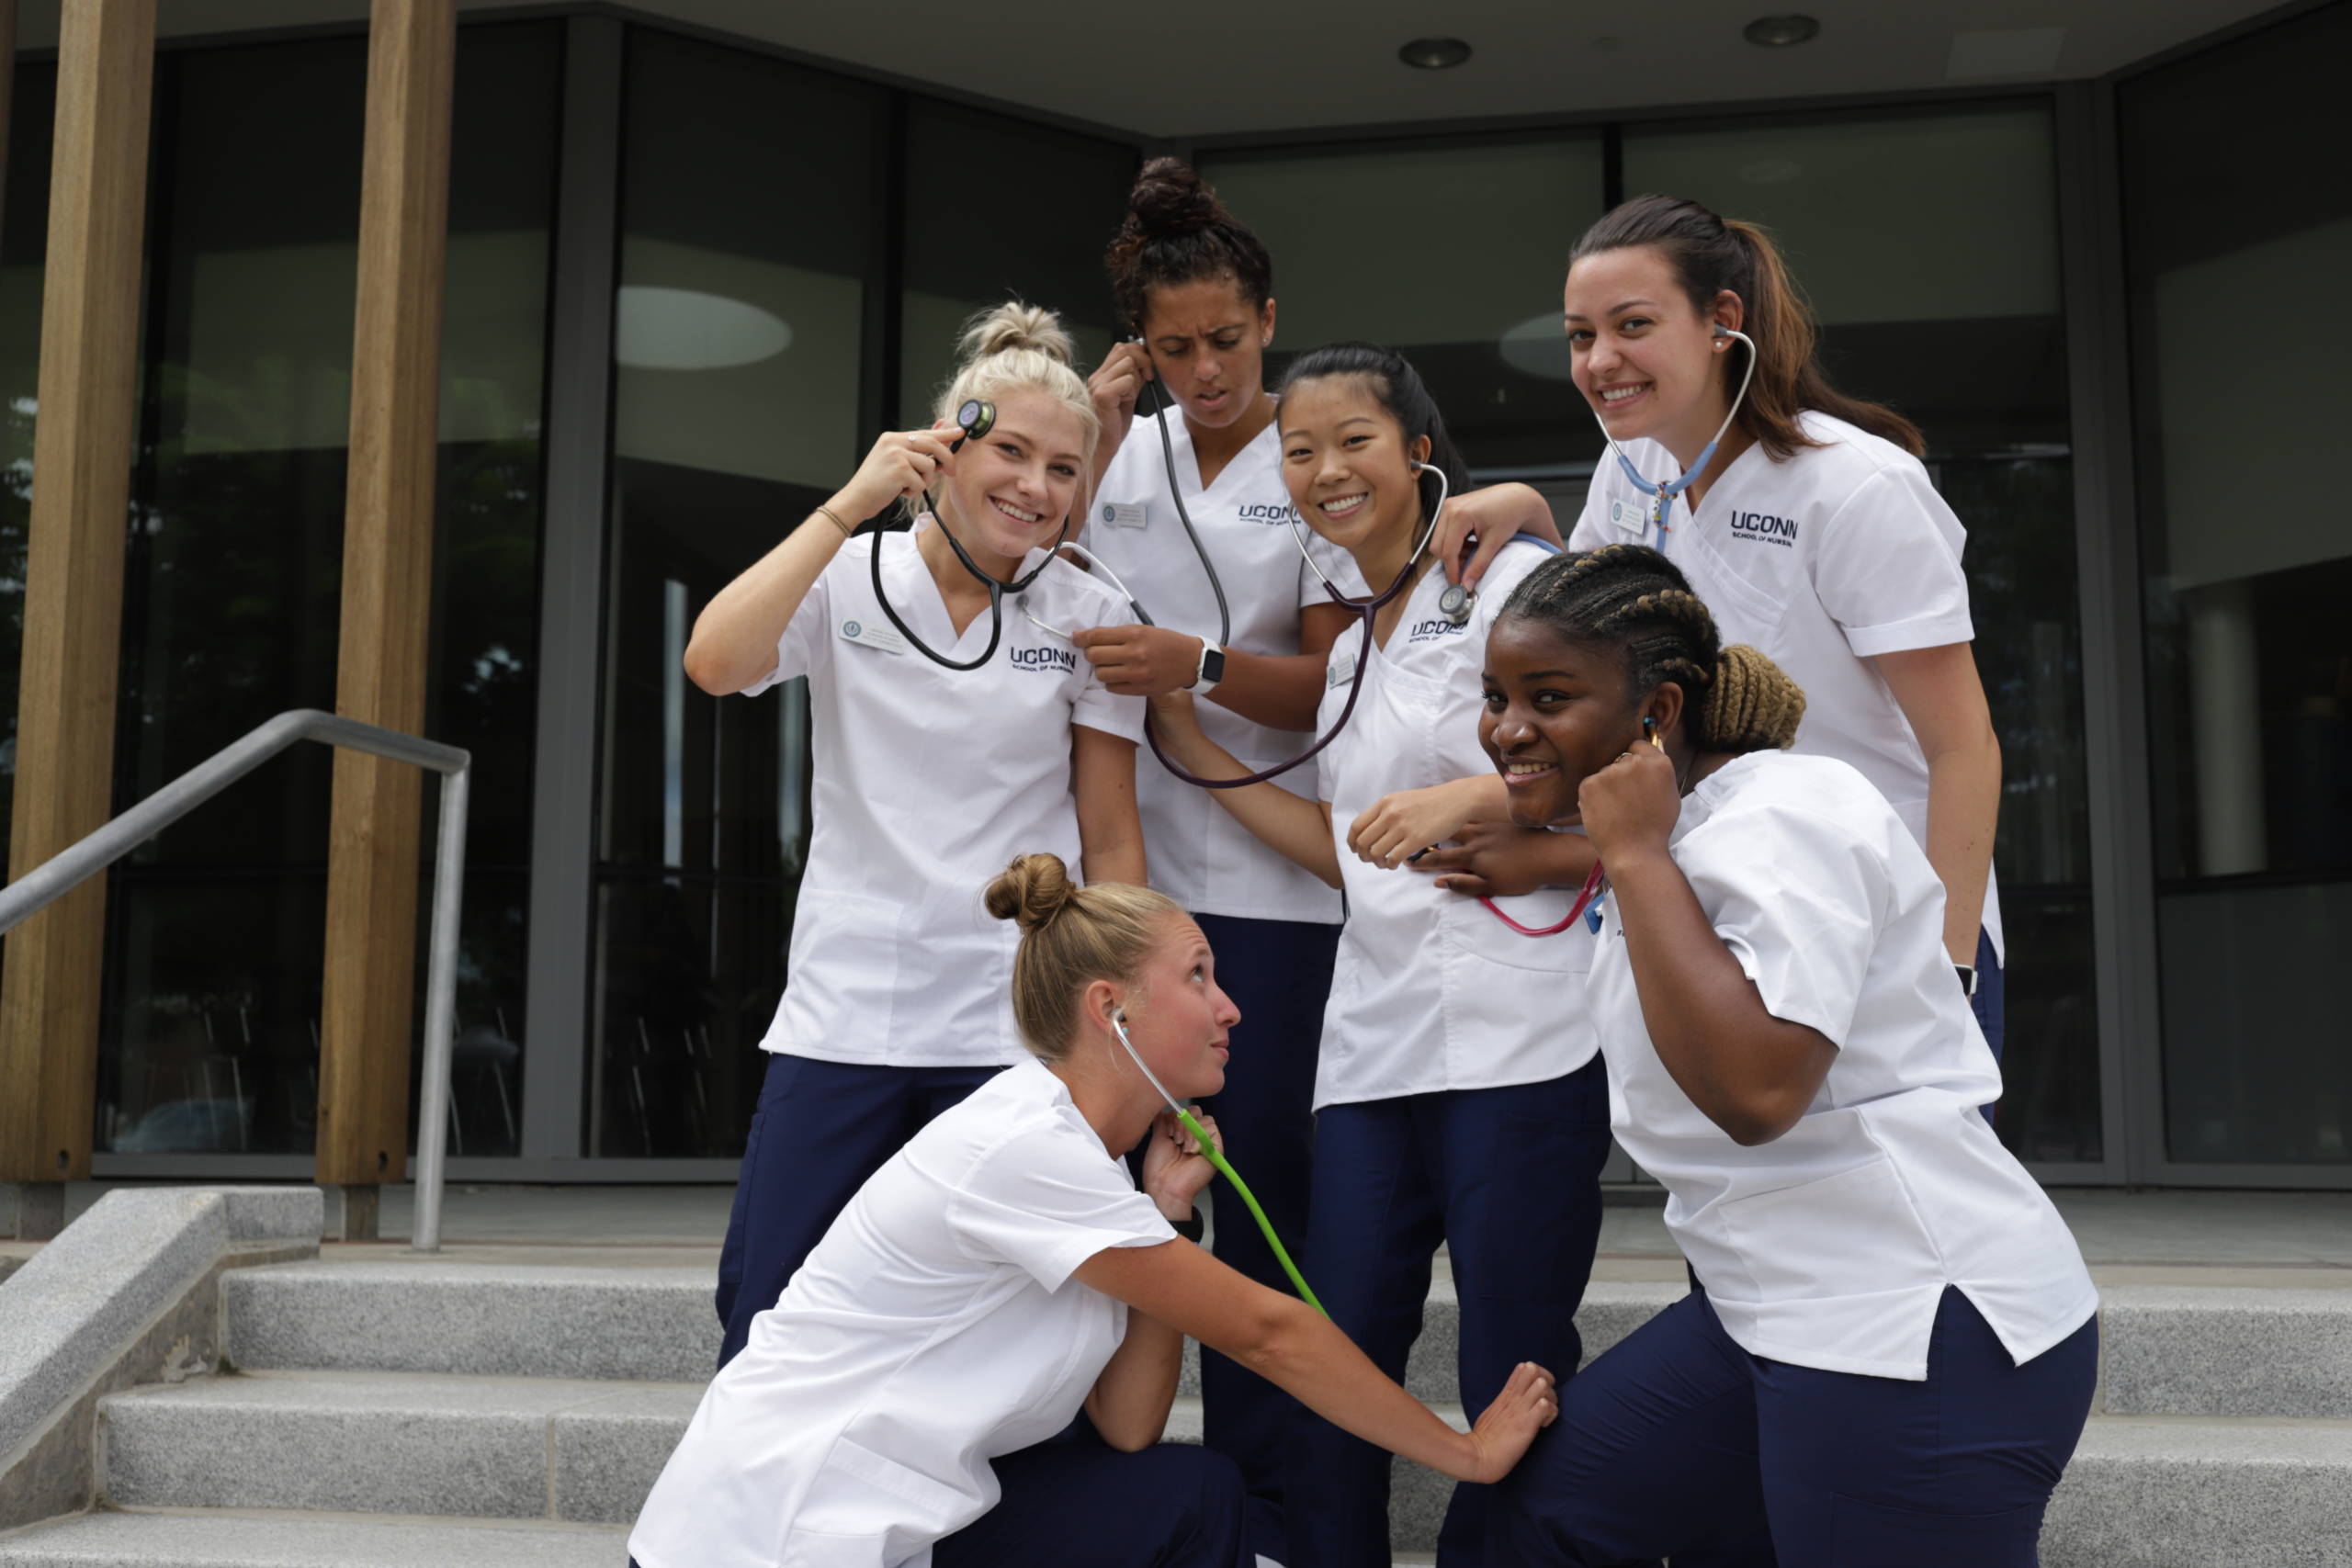 UConn nursing students with stethoscopes